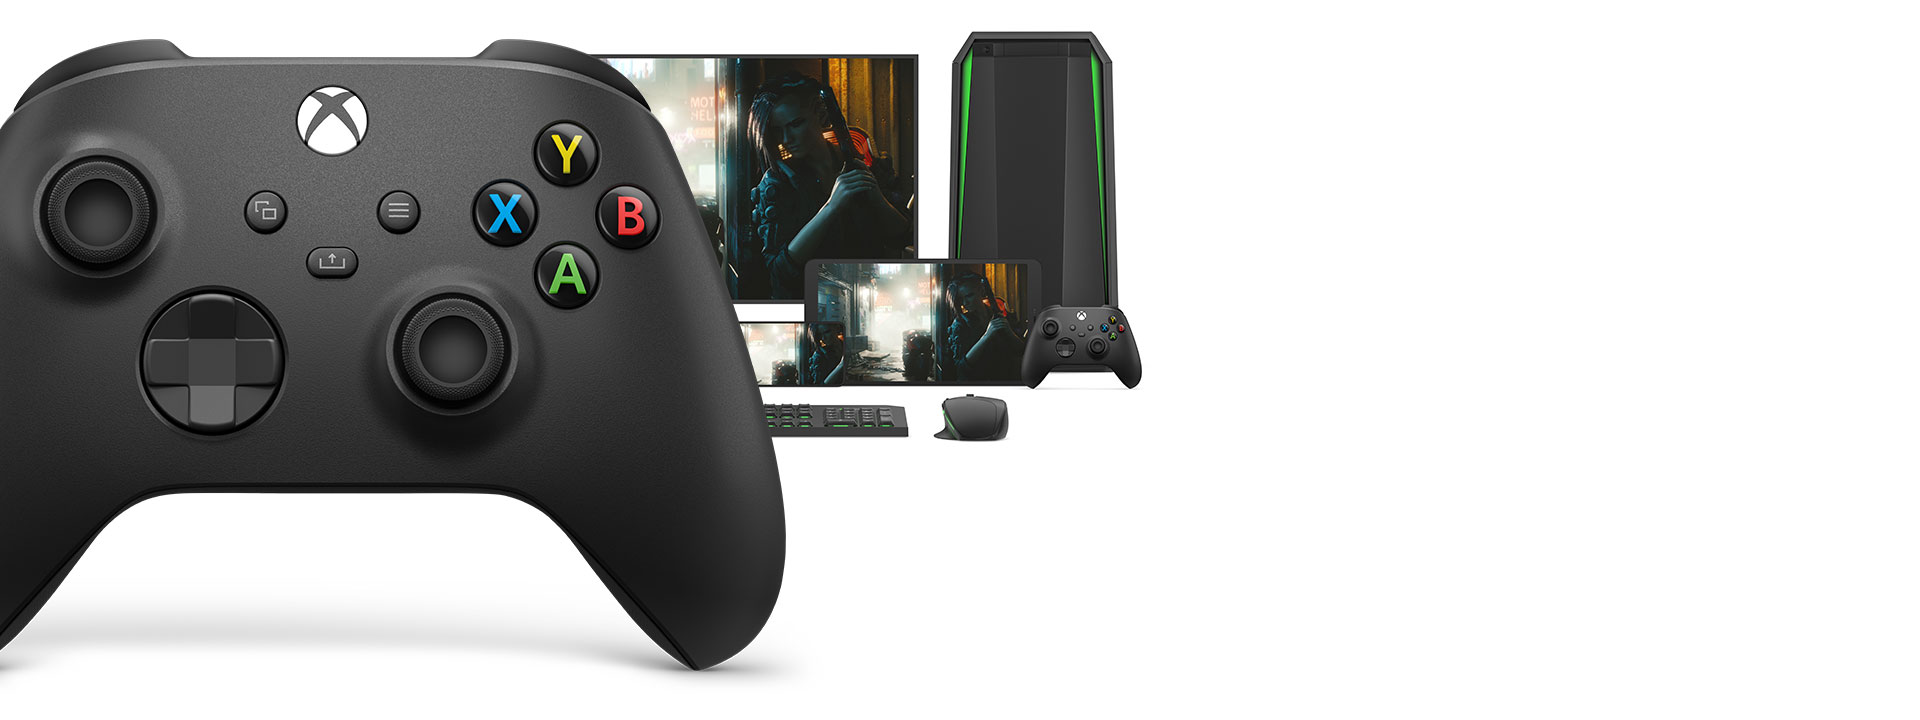 Tay cầm chơi game Xbox Series X Controller - Carbon Black dễ dàng ghép nối và chuyển đổi qua các thiết bị khác nhau